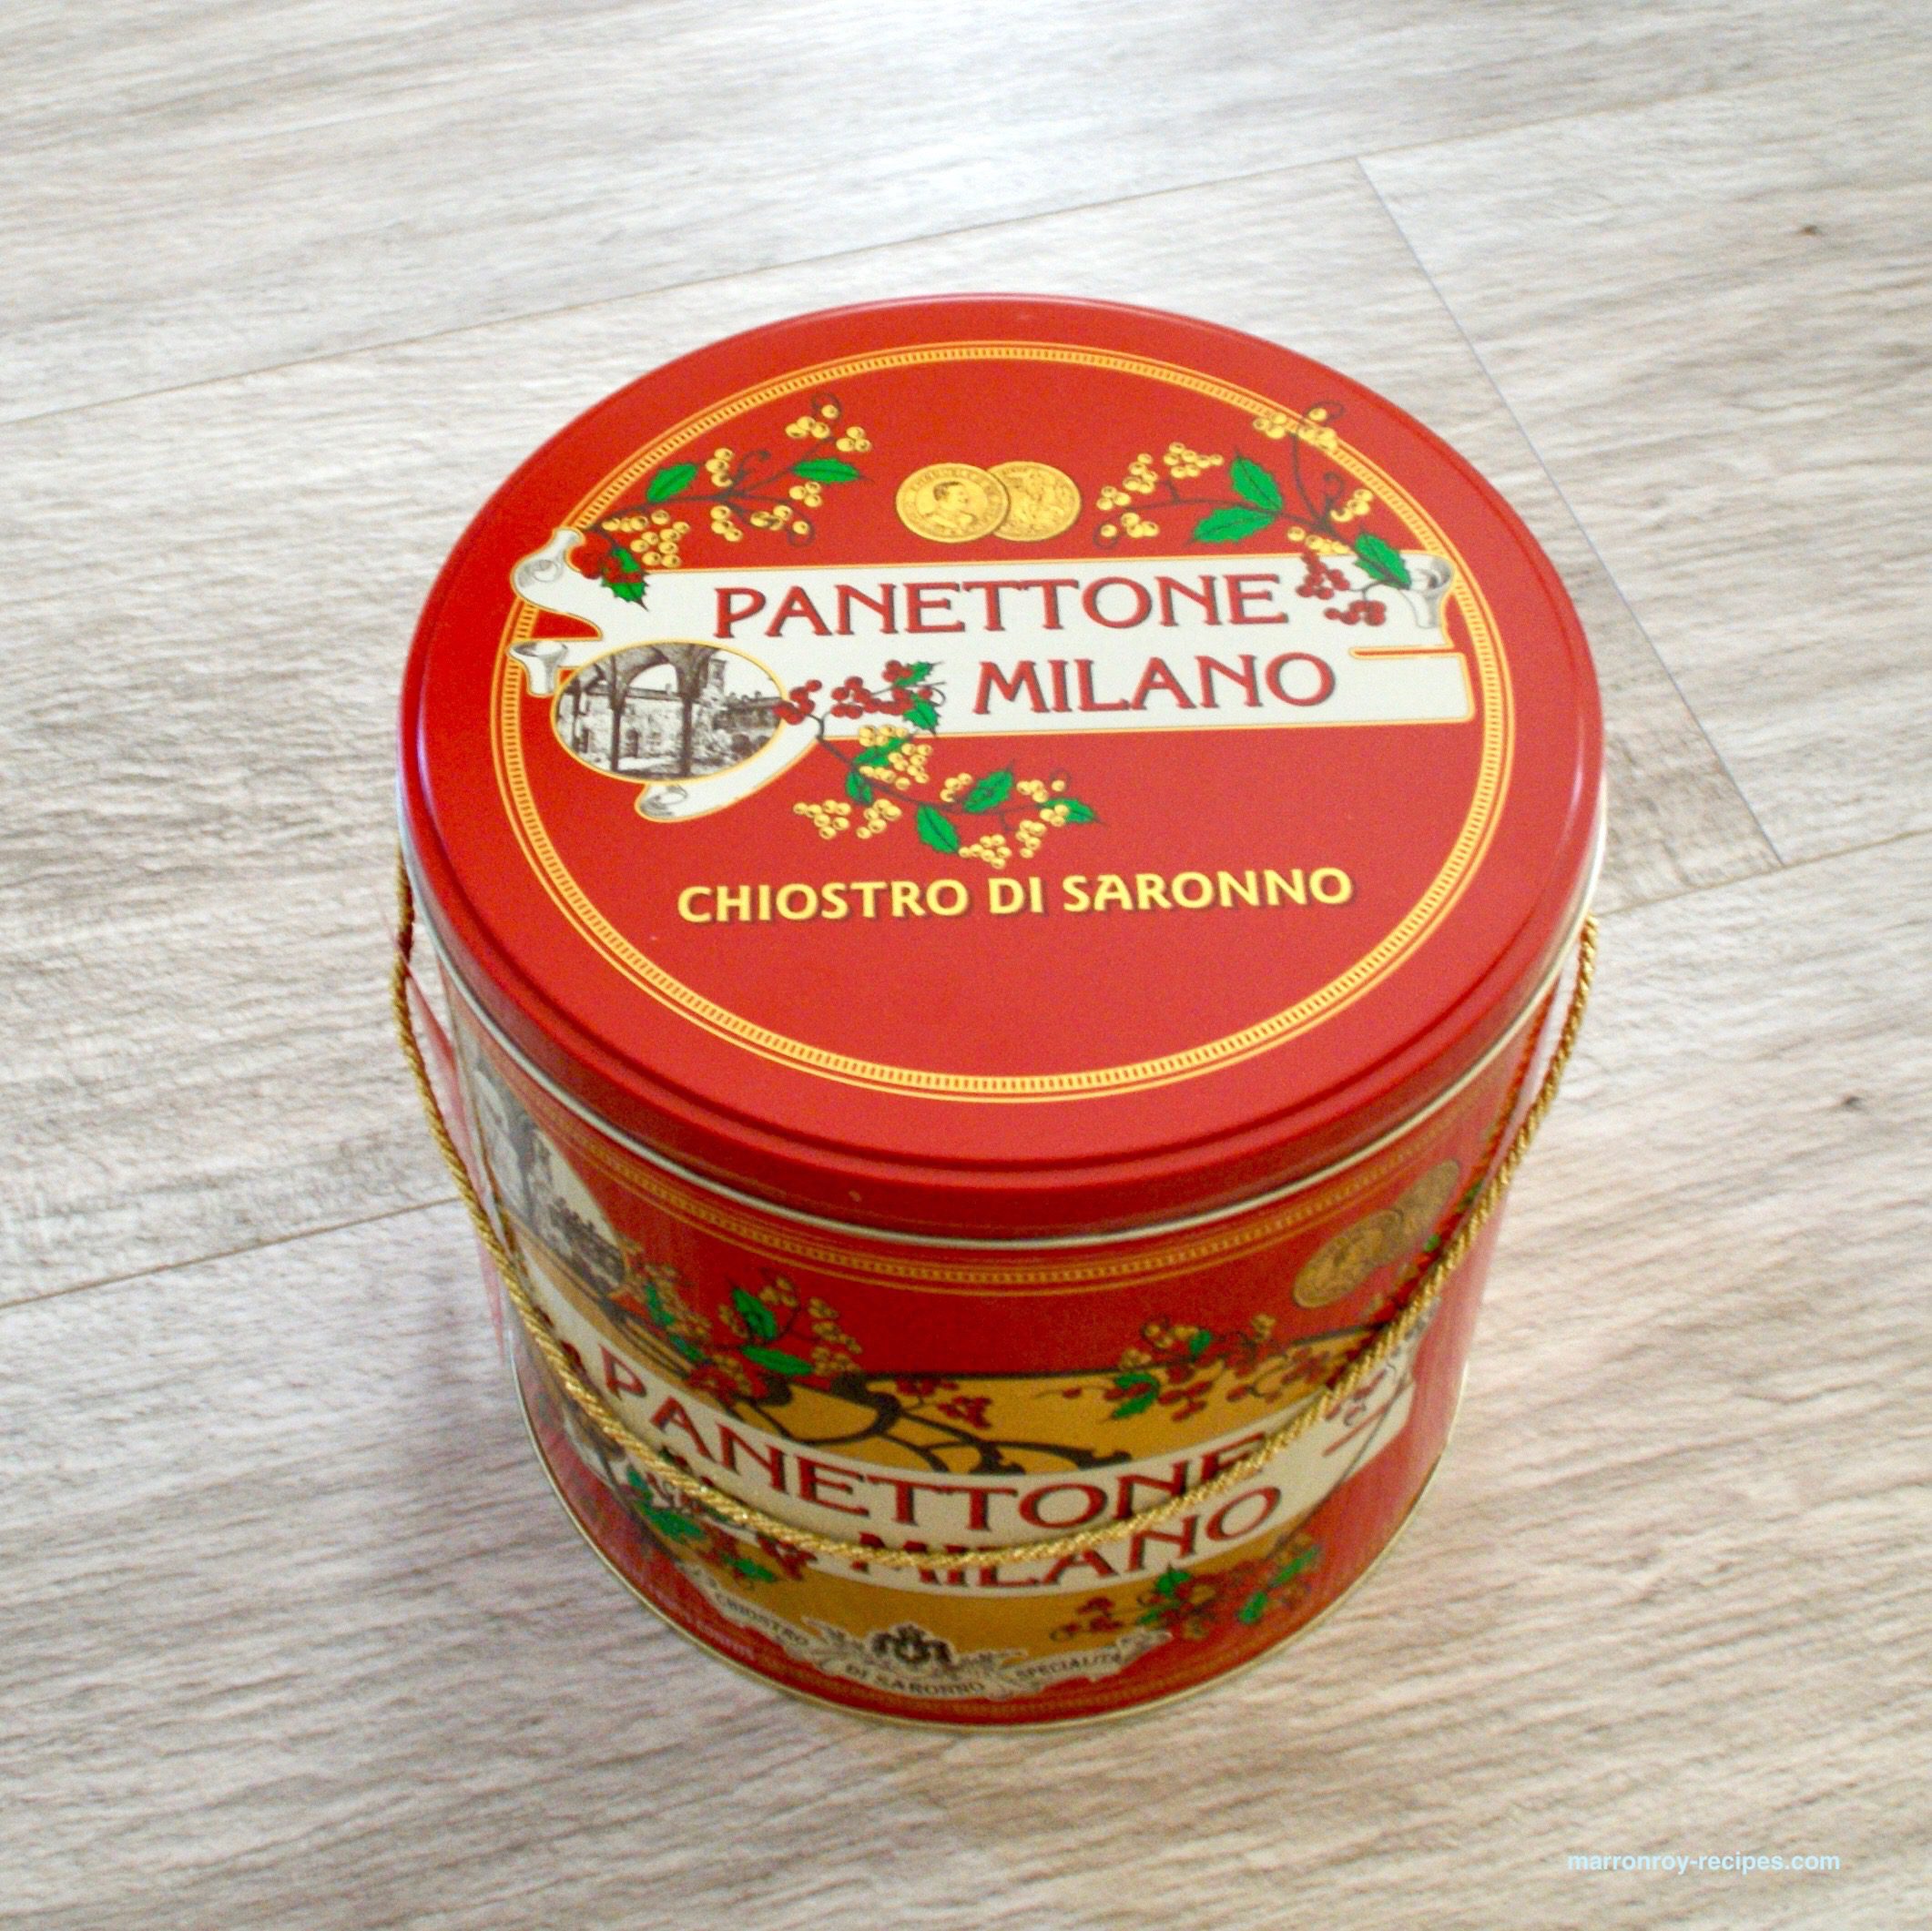 コストコのパネトーネ“Chiostro di Saronno 缶入りパネトーネ”